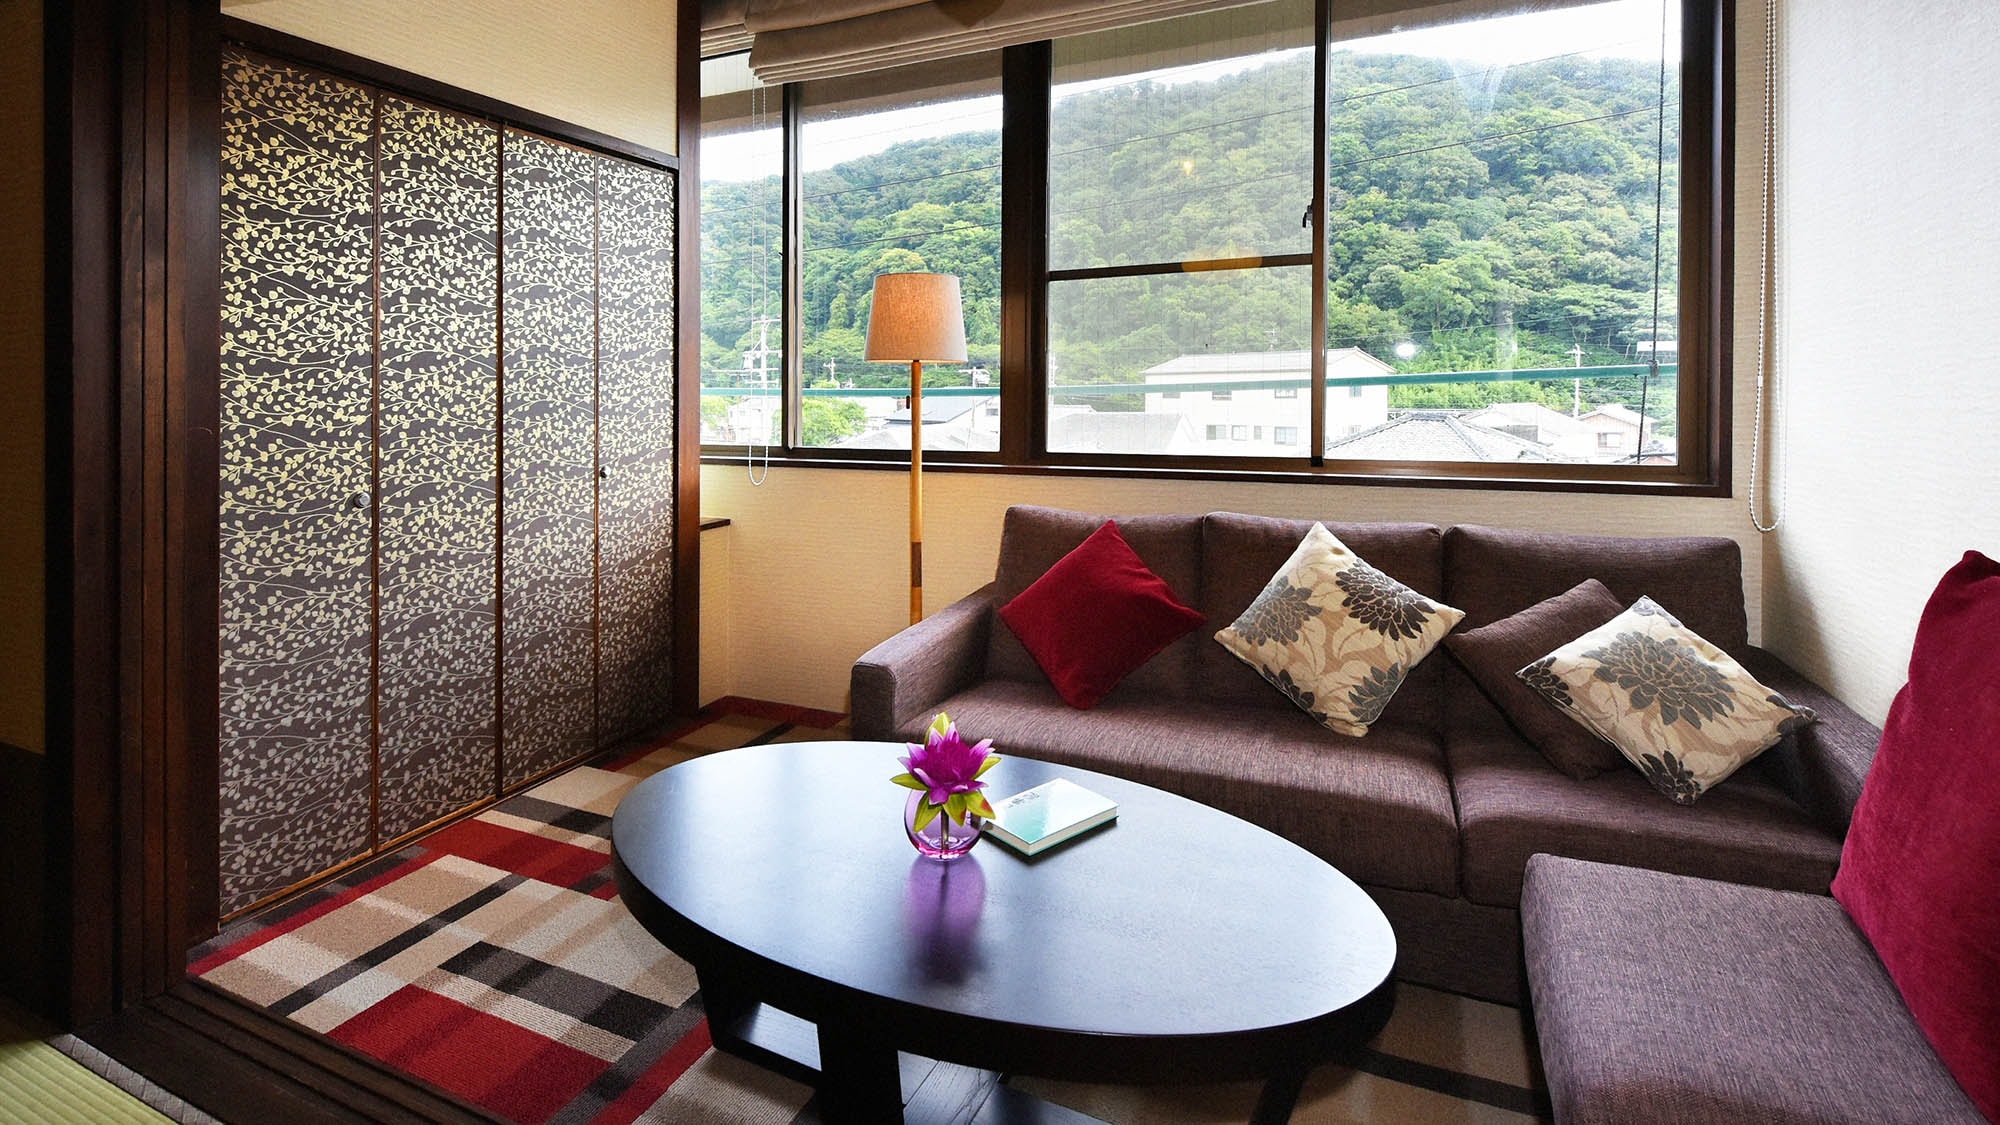 ・ [普通客房示例] 8 至 12 張榻榻米的日式房間。簡單舒適的空間